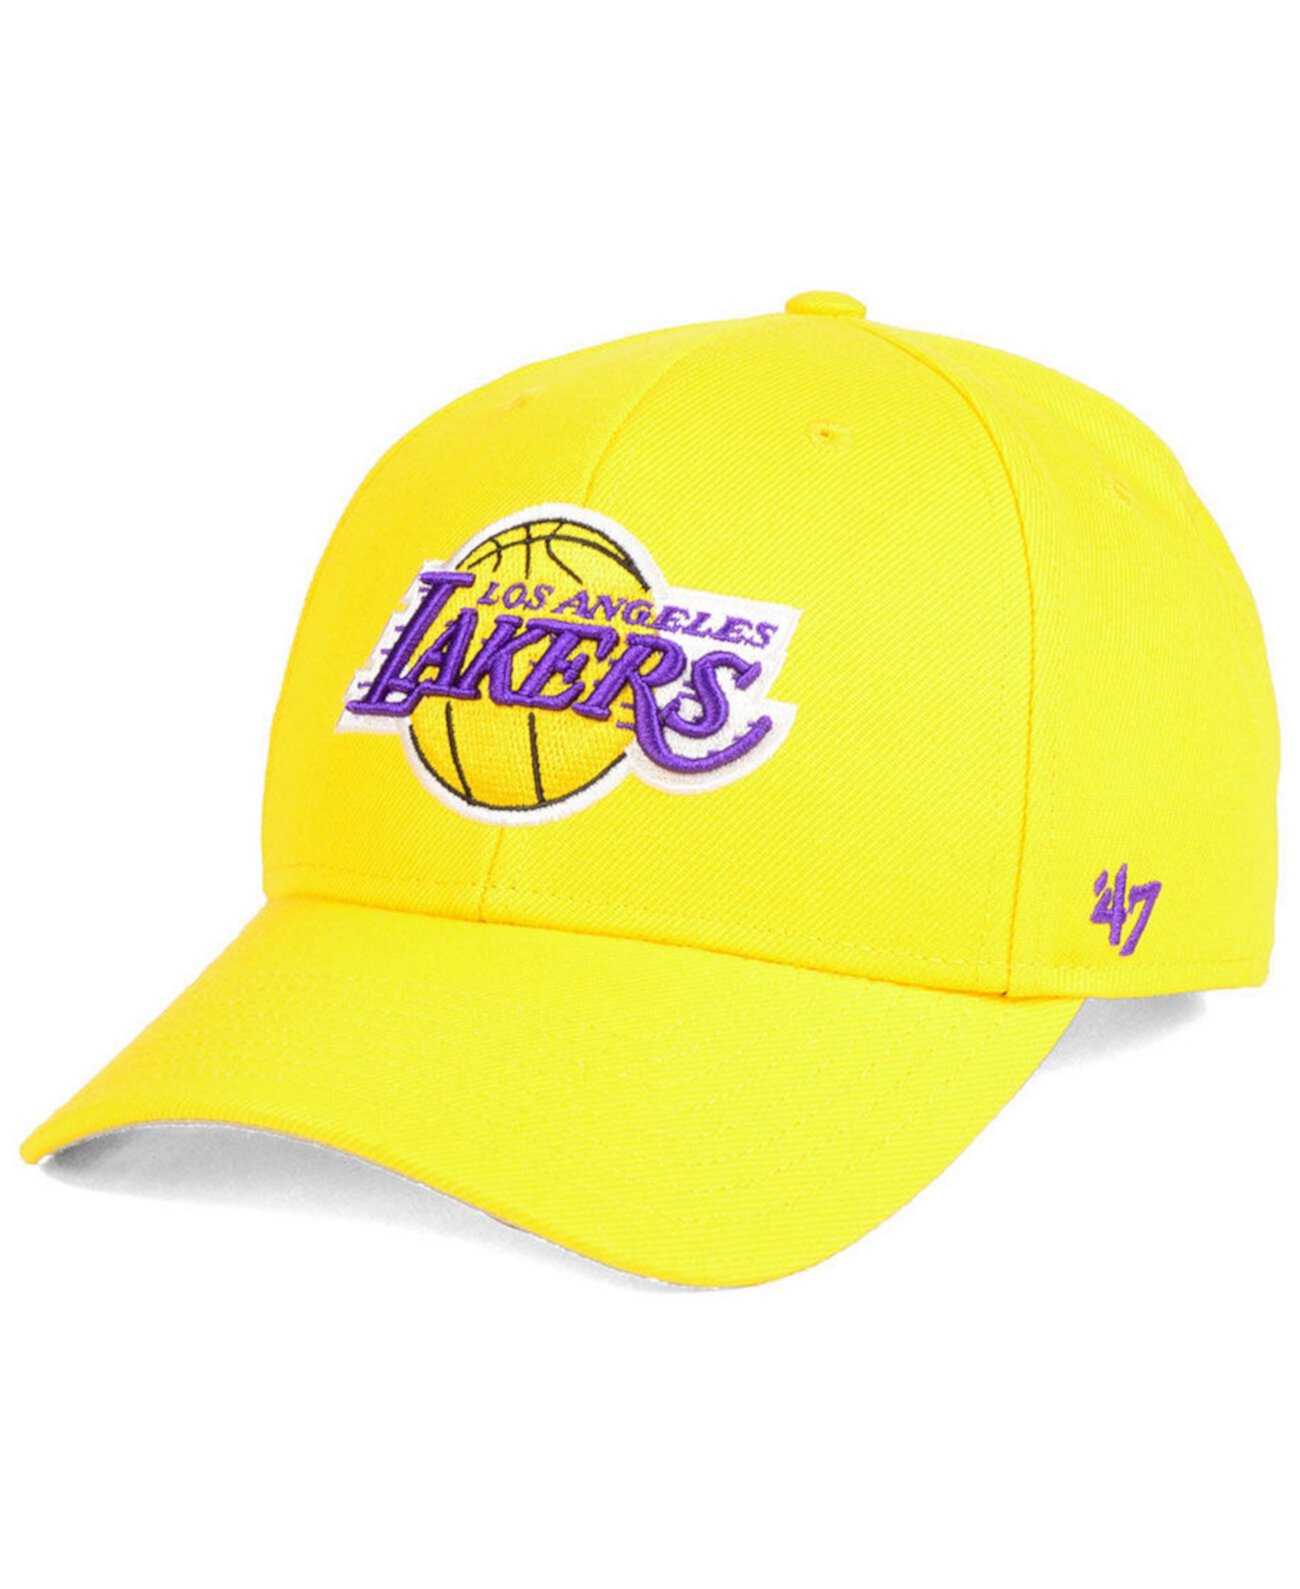 Кепка New era Lakers оригинал